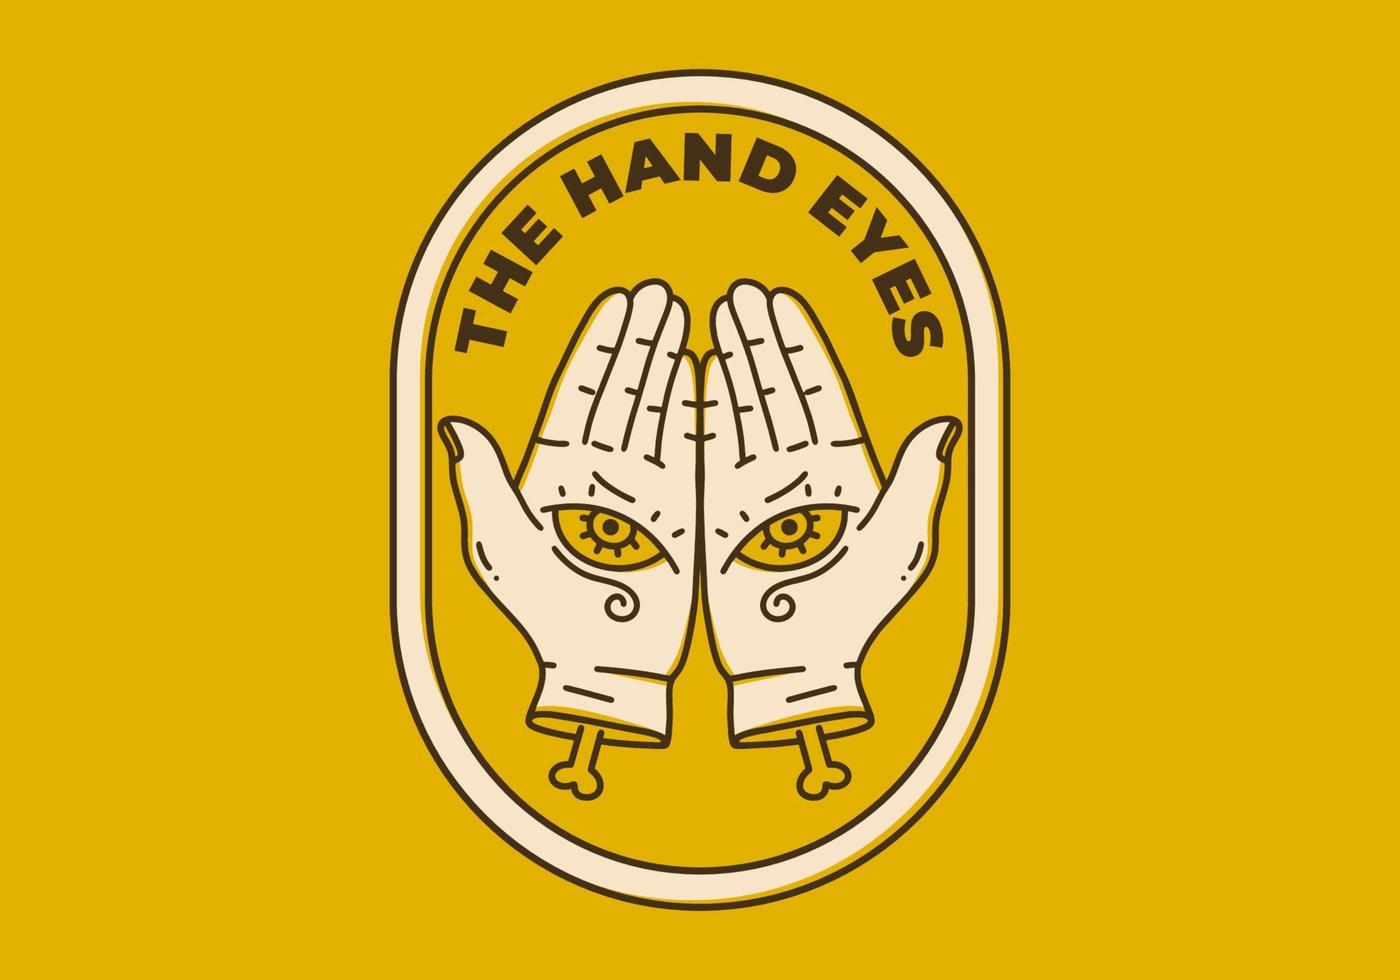 ilustración de arte vintage de dos manos con ojos vector